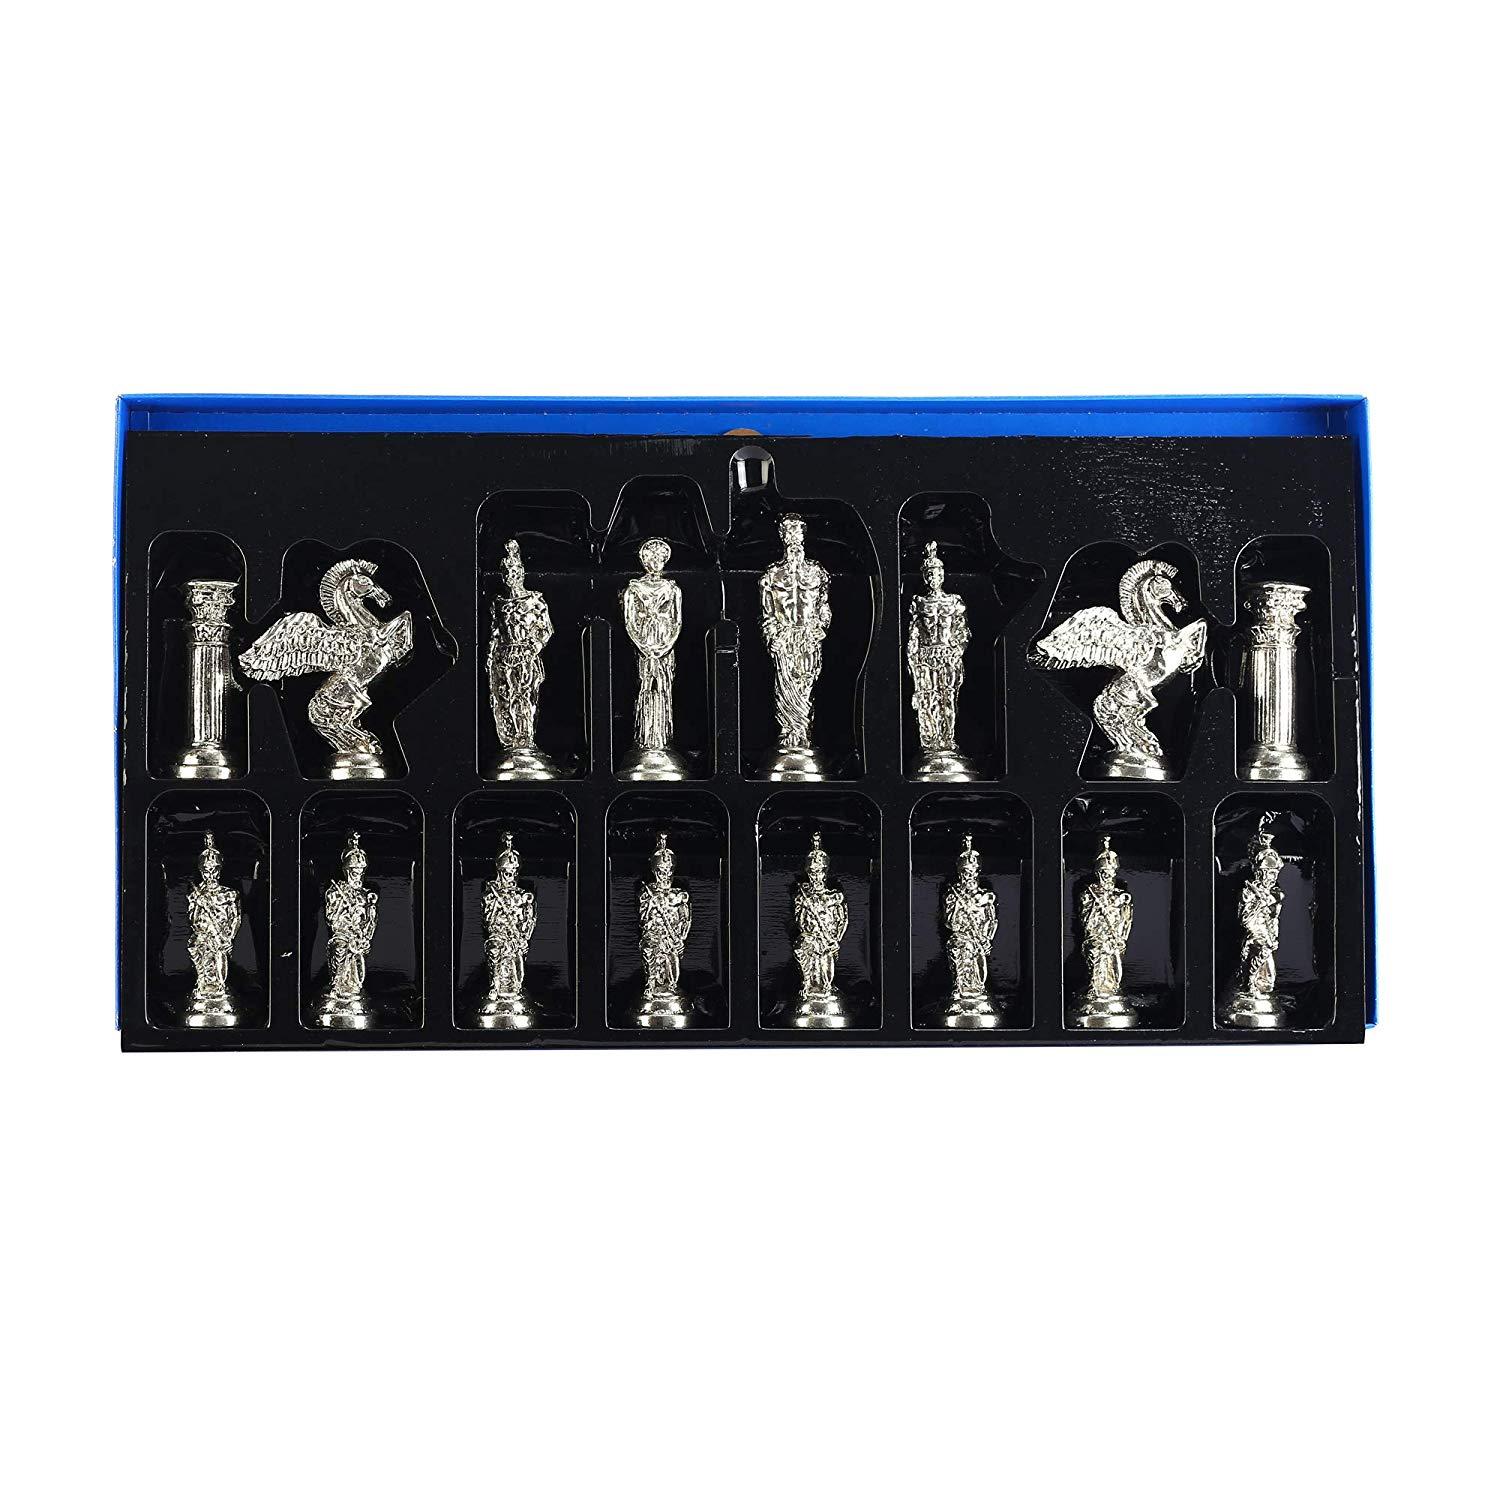 Изображение товара: Шахматный набор для взрослых, мифологический Пегас, деревянная шахматная доска с мраморным дизайном, 9,5 см